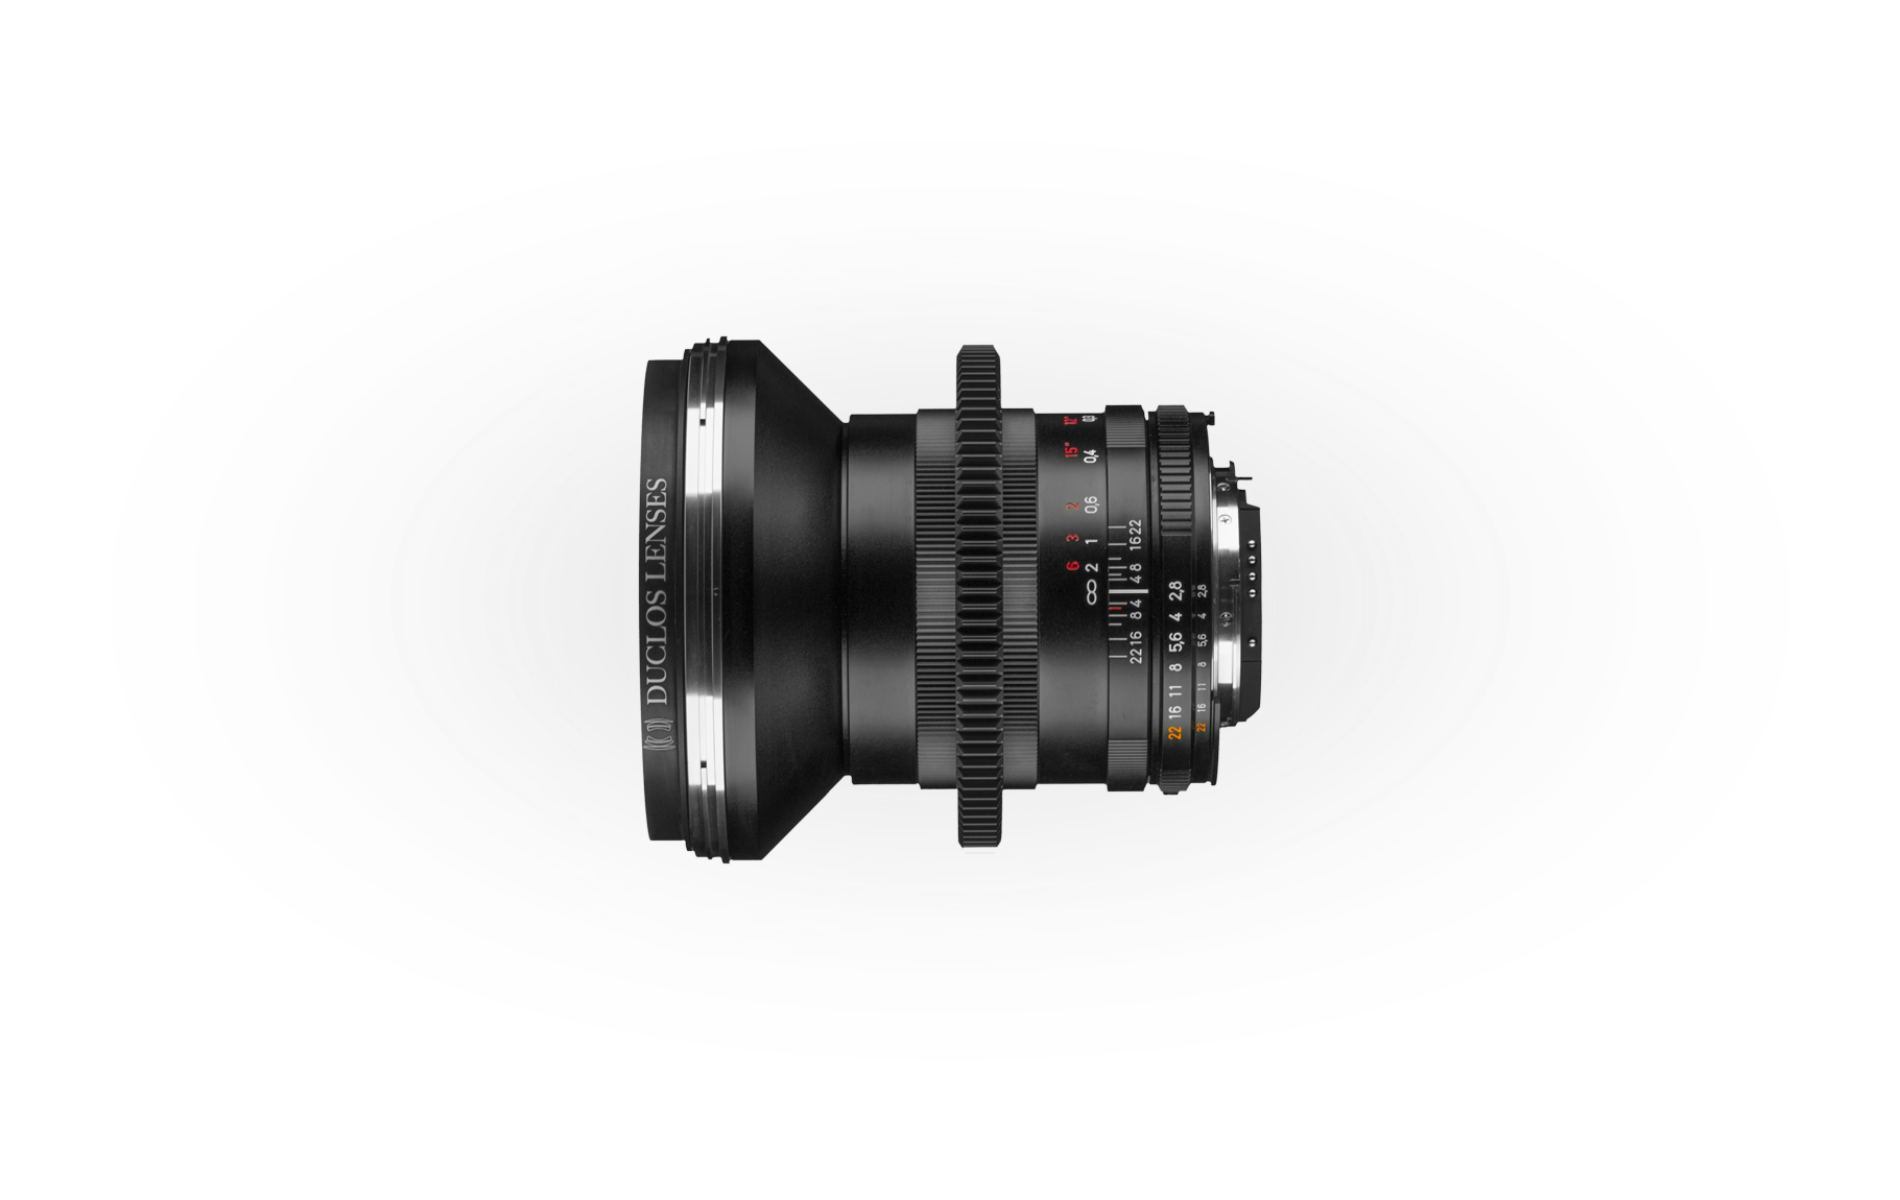 PRIME-CIRCLE RingKits for ZF.2 Lenses & PRIME-CIRCLE XT Lens Kits